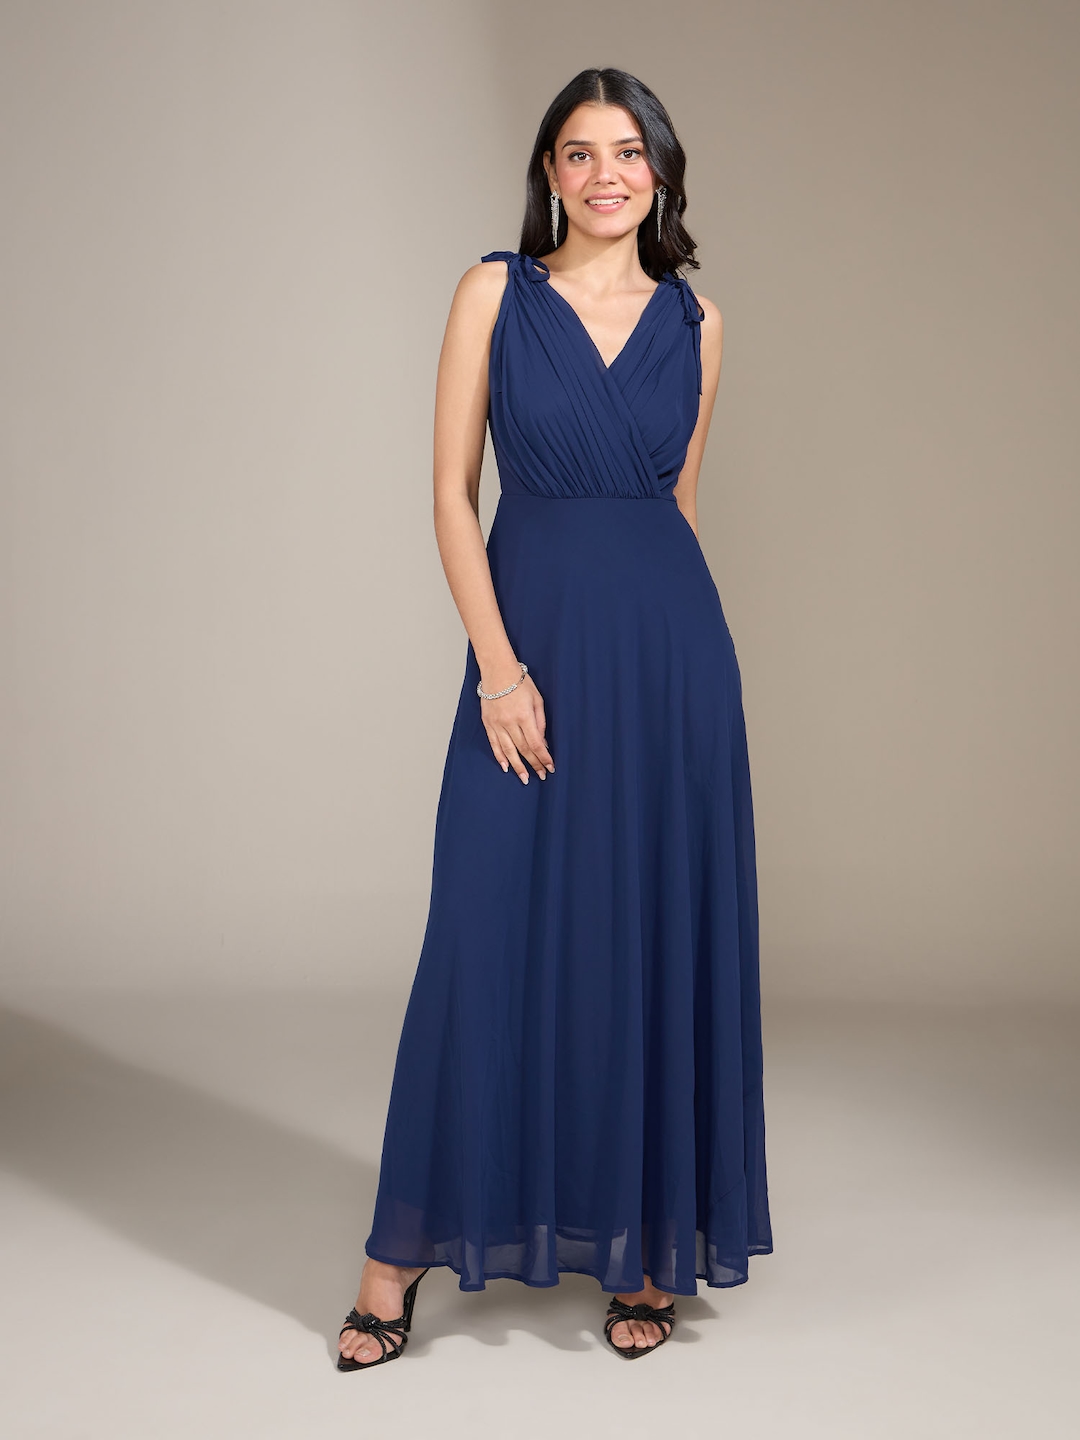 Buy 20Dresses Navy Blue V Neck Maxi Dress - Dresses for Women 7225013